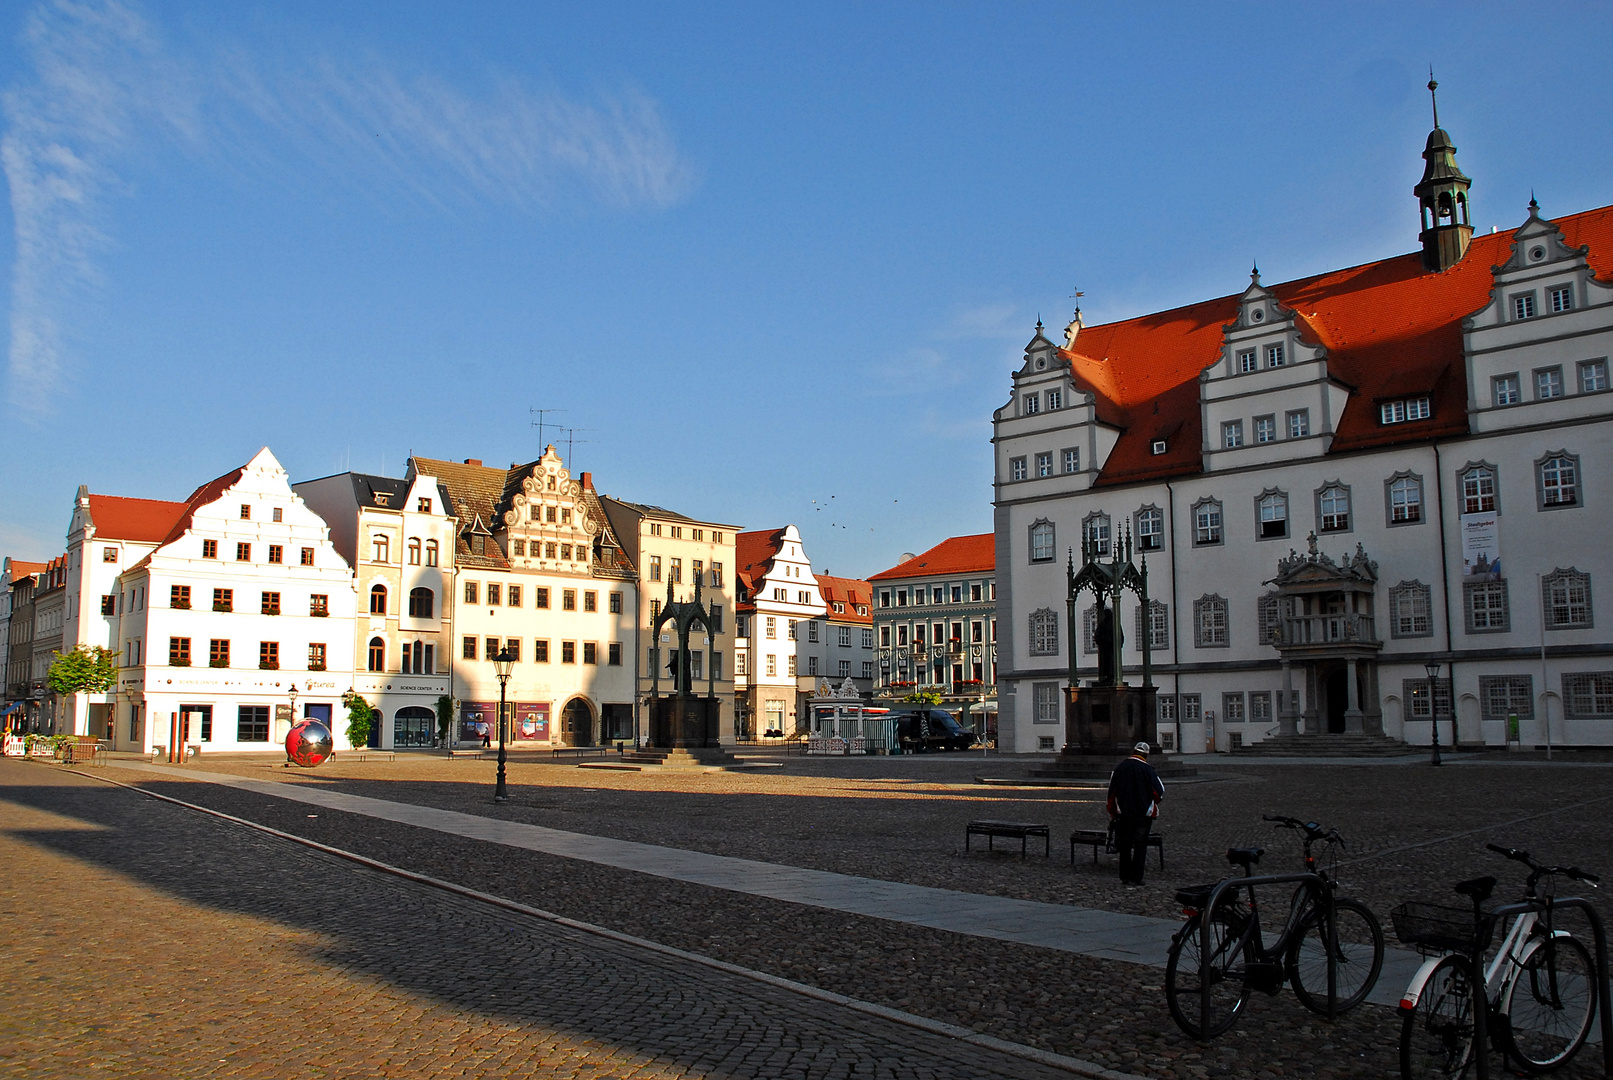 Marktplatz Wittenberg